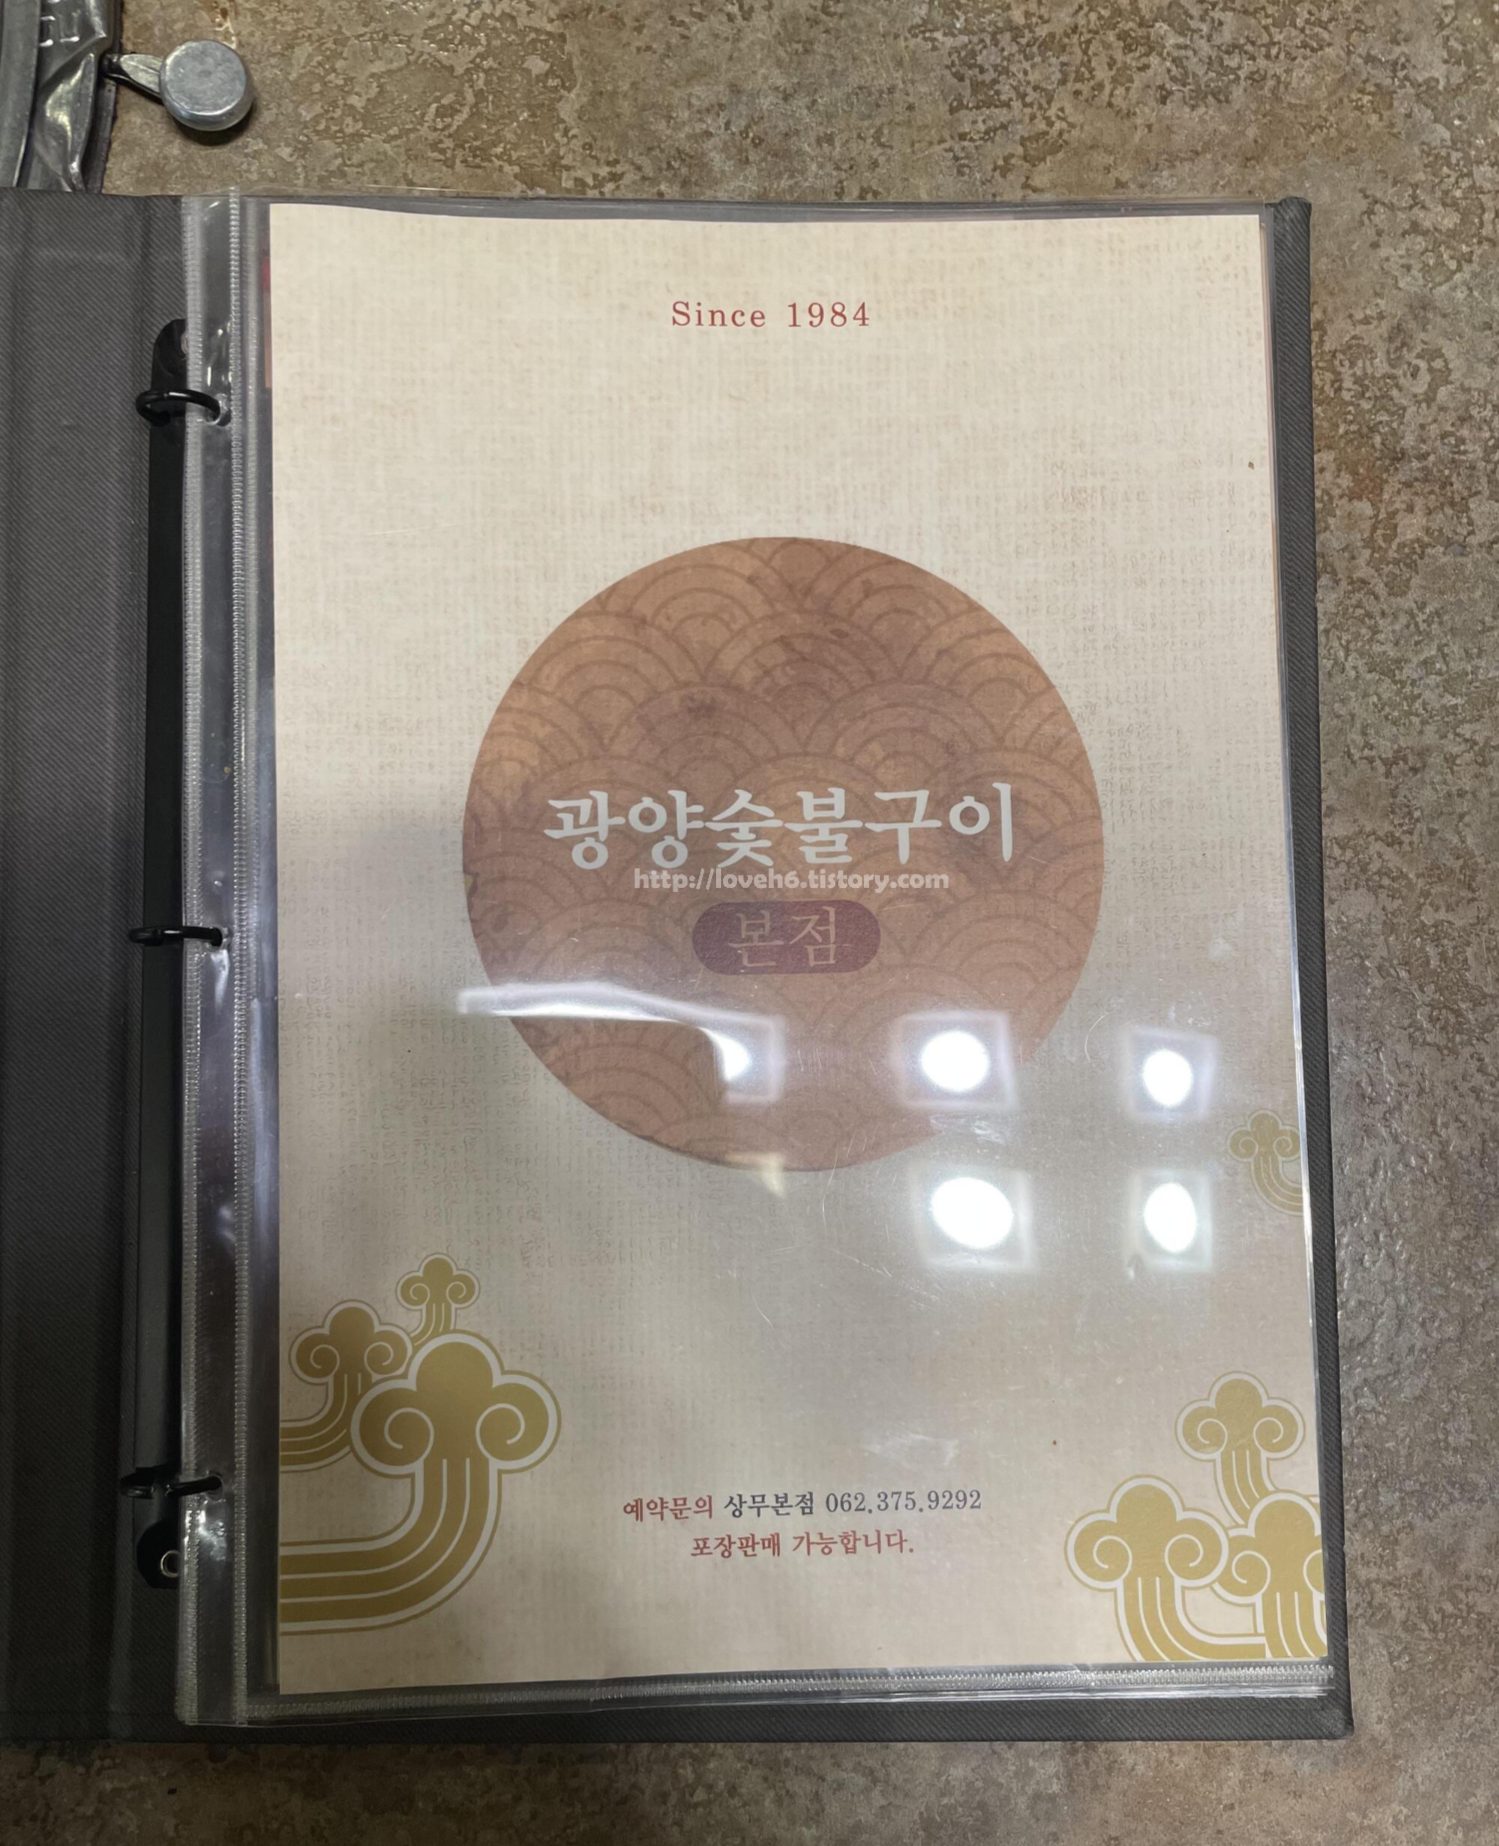 광양숯불구이 상무본점/Gwangyang Charcoal Grilled Sangmu Main Branch/광양 숯불구이 본점

예약문의 : 062-375-9292

포장판매 가능합니다